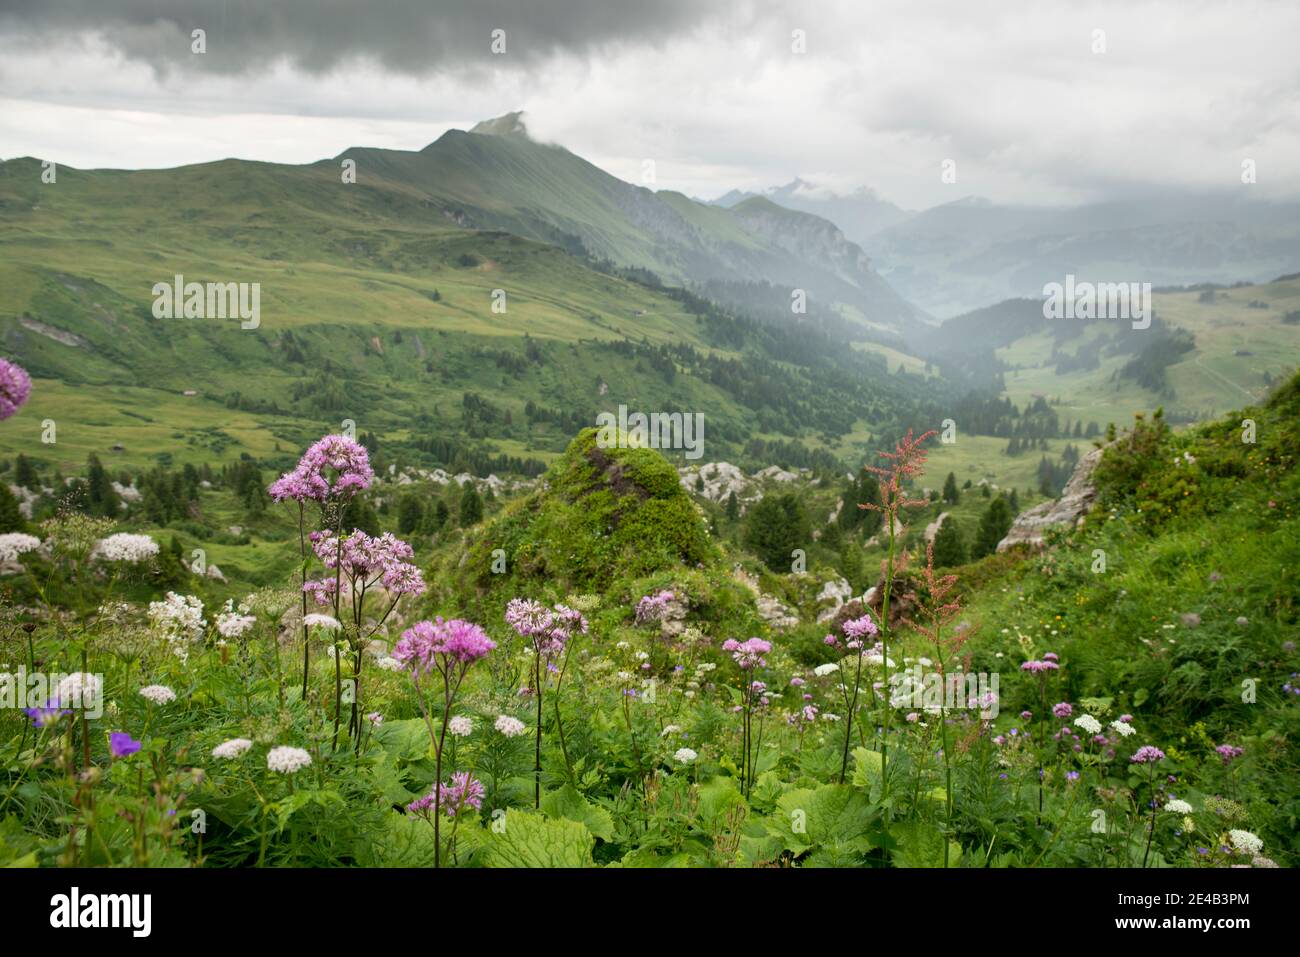 fleurs violettes au bord de la voie, pluvieux, pics de montagne dans les nuages Banque D'Images